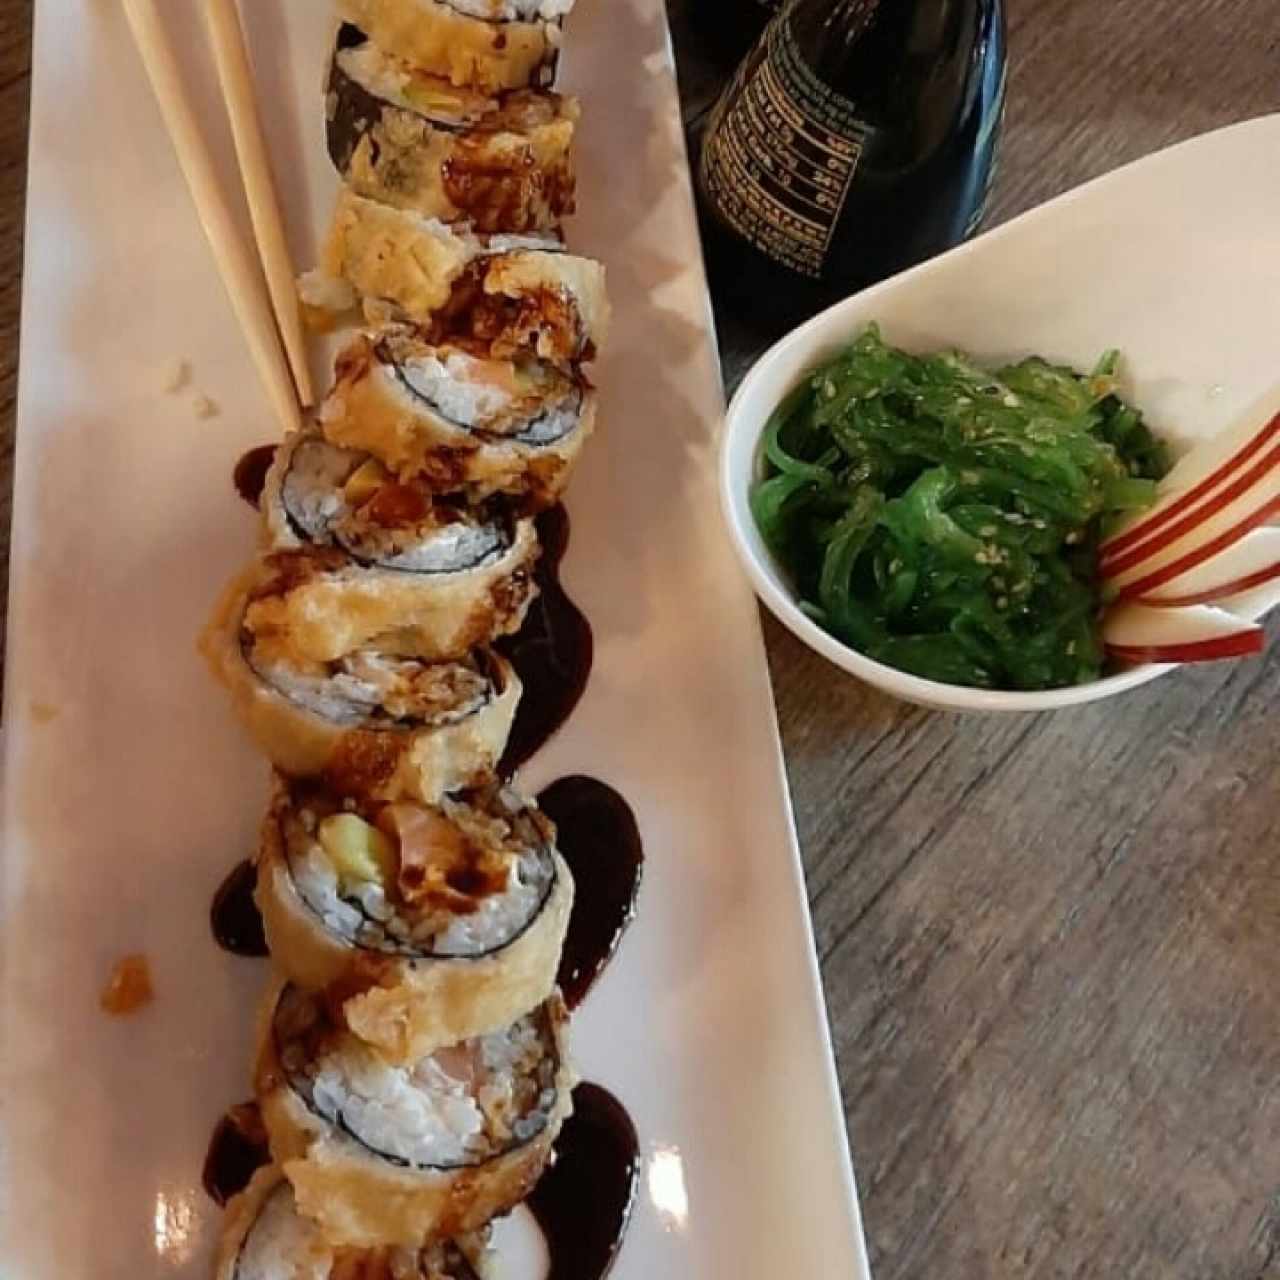 Tataki Sushi